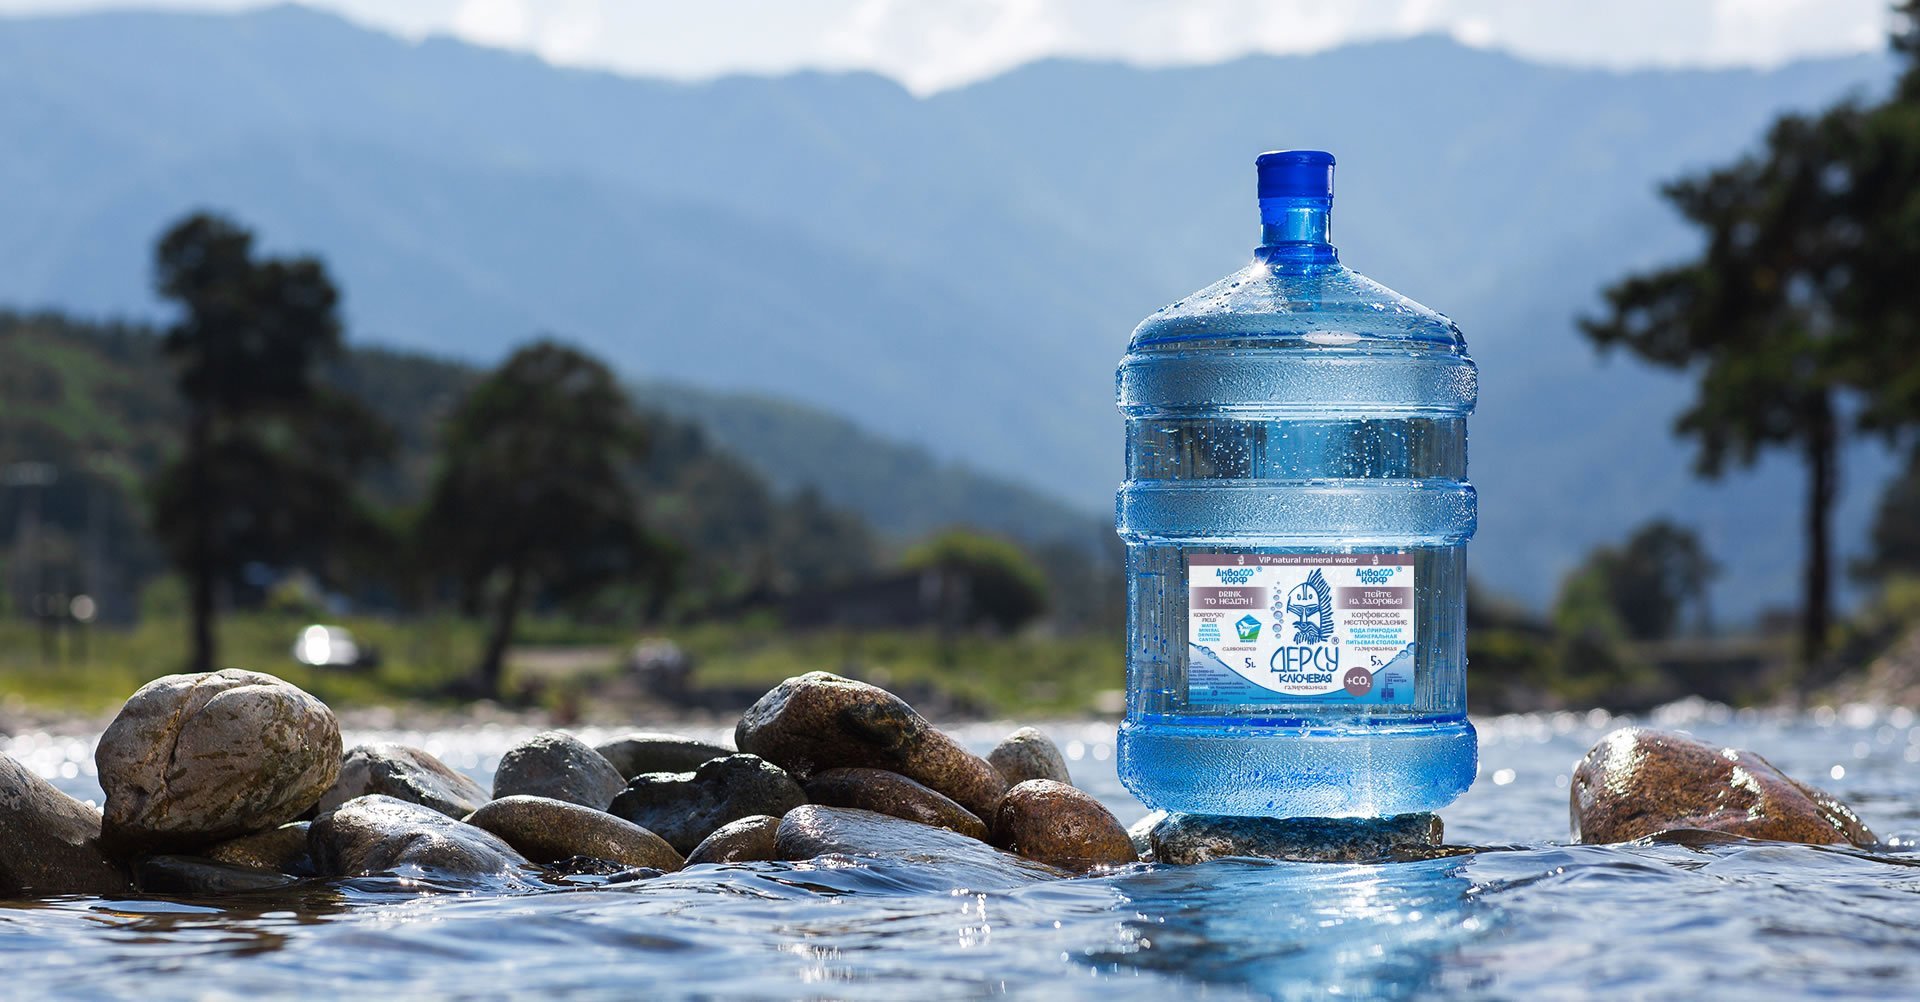 Сайт питьевой воды. Бутылка для воды. Вода в бутылях. Питье воды. Чистая вода.